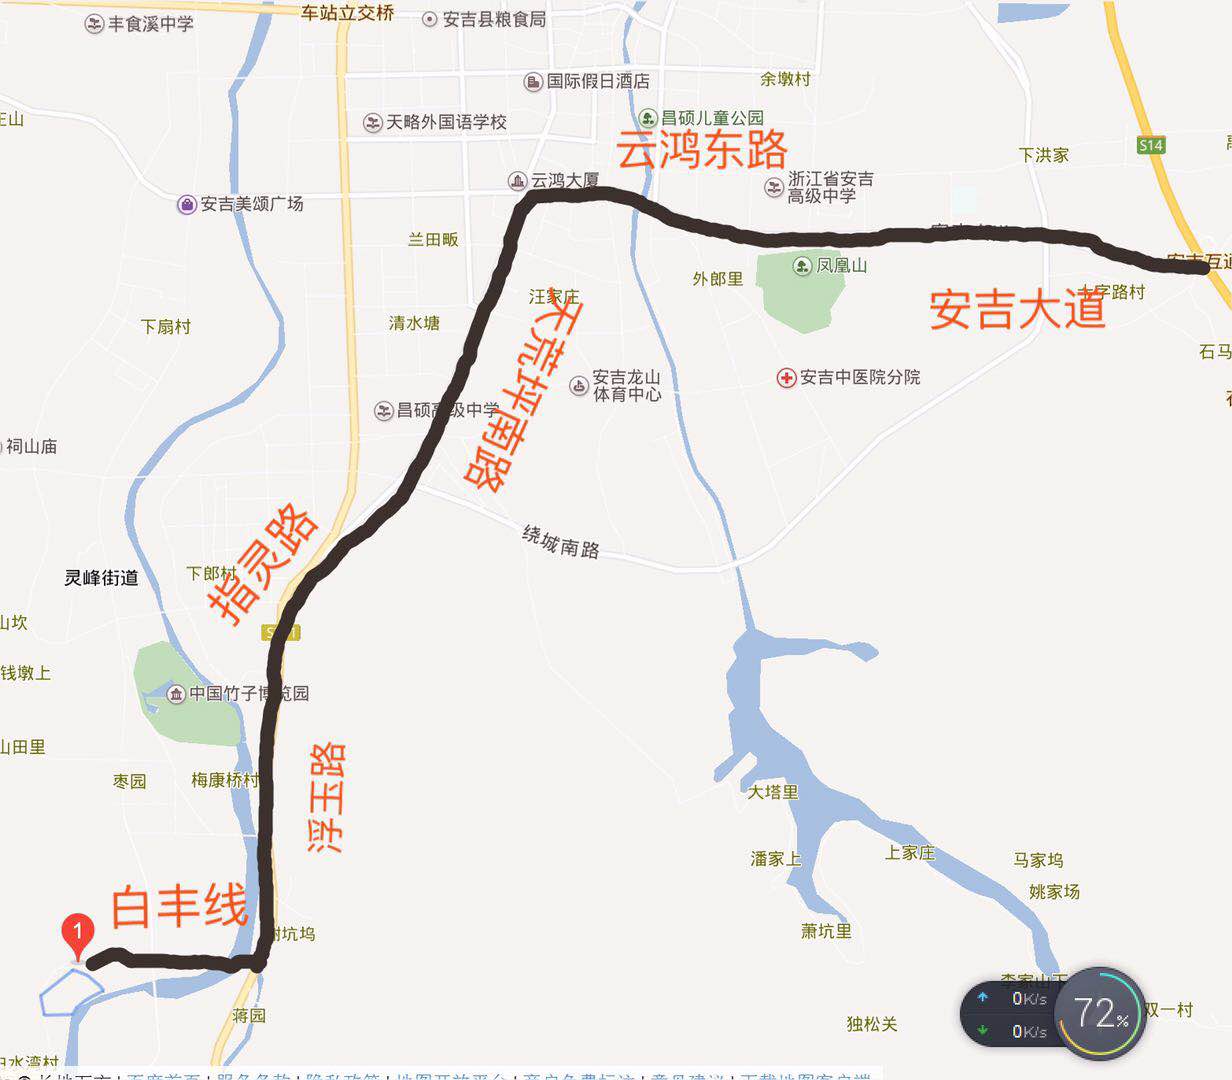 灵峰山庄交通图-小柯网